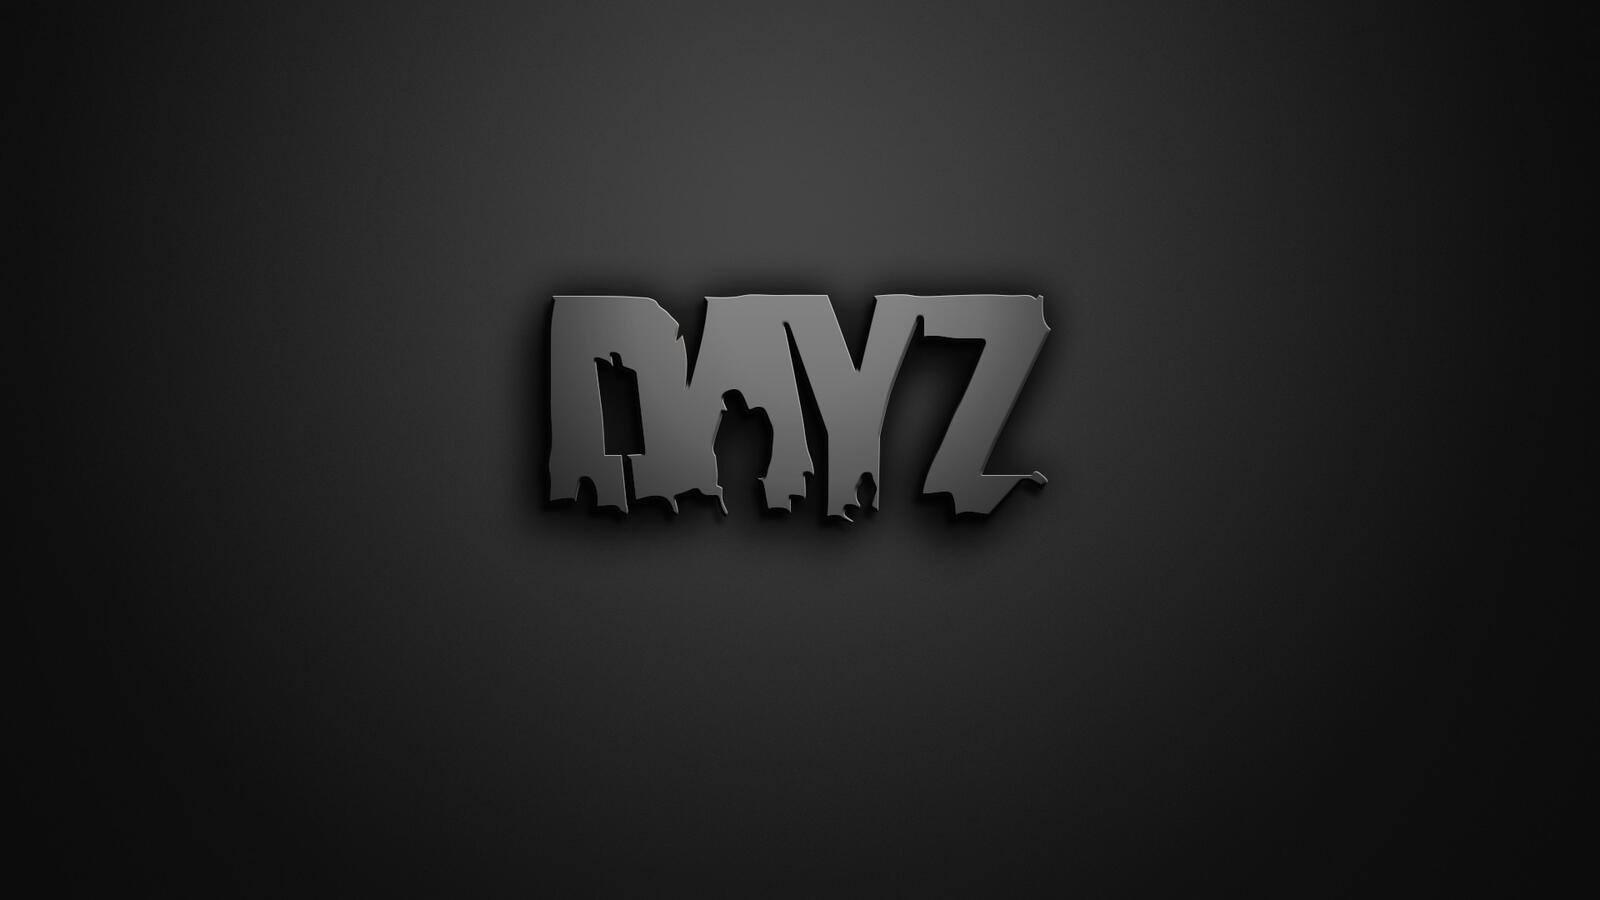 免费照片DayZ 游戏徽标